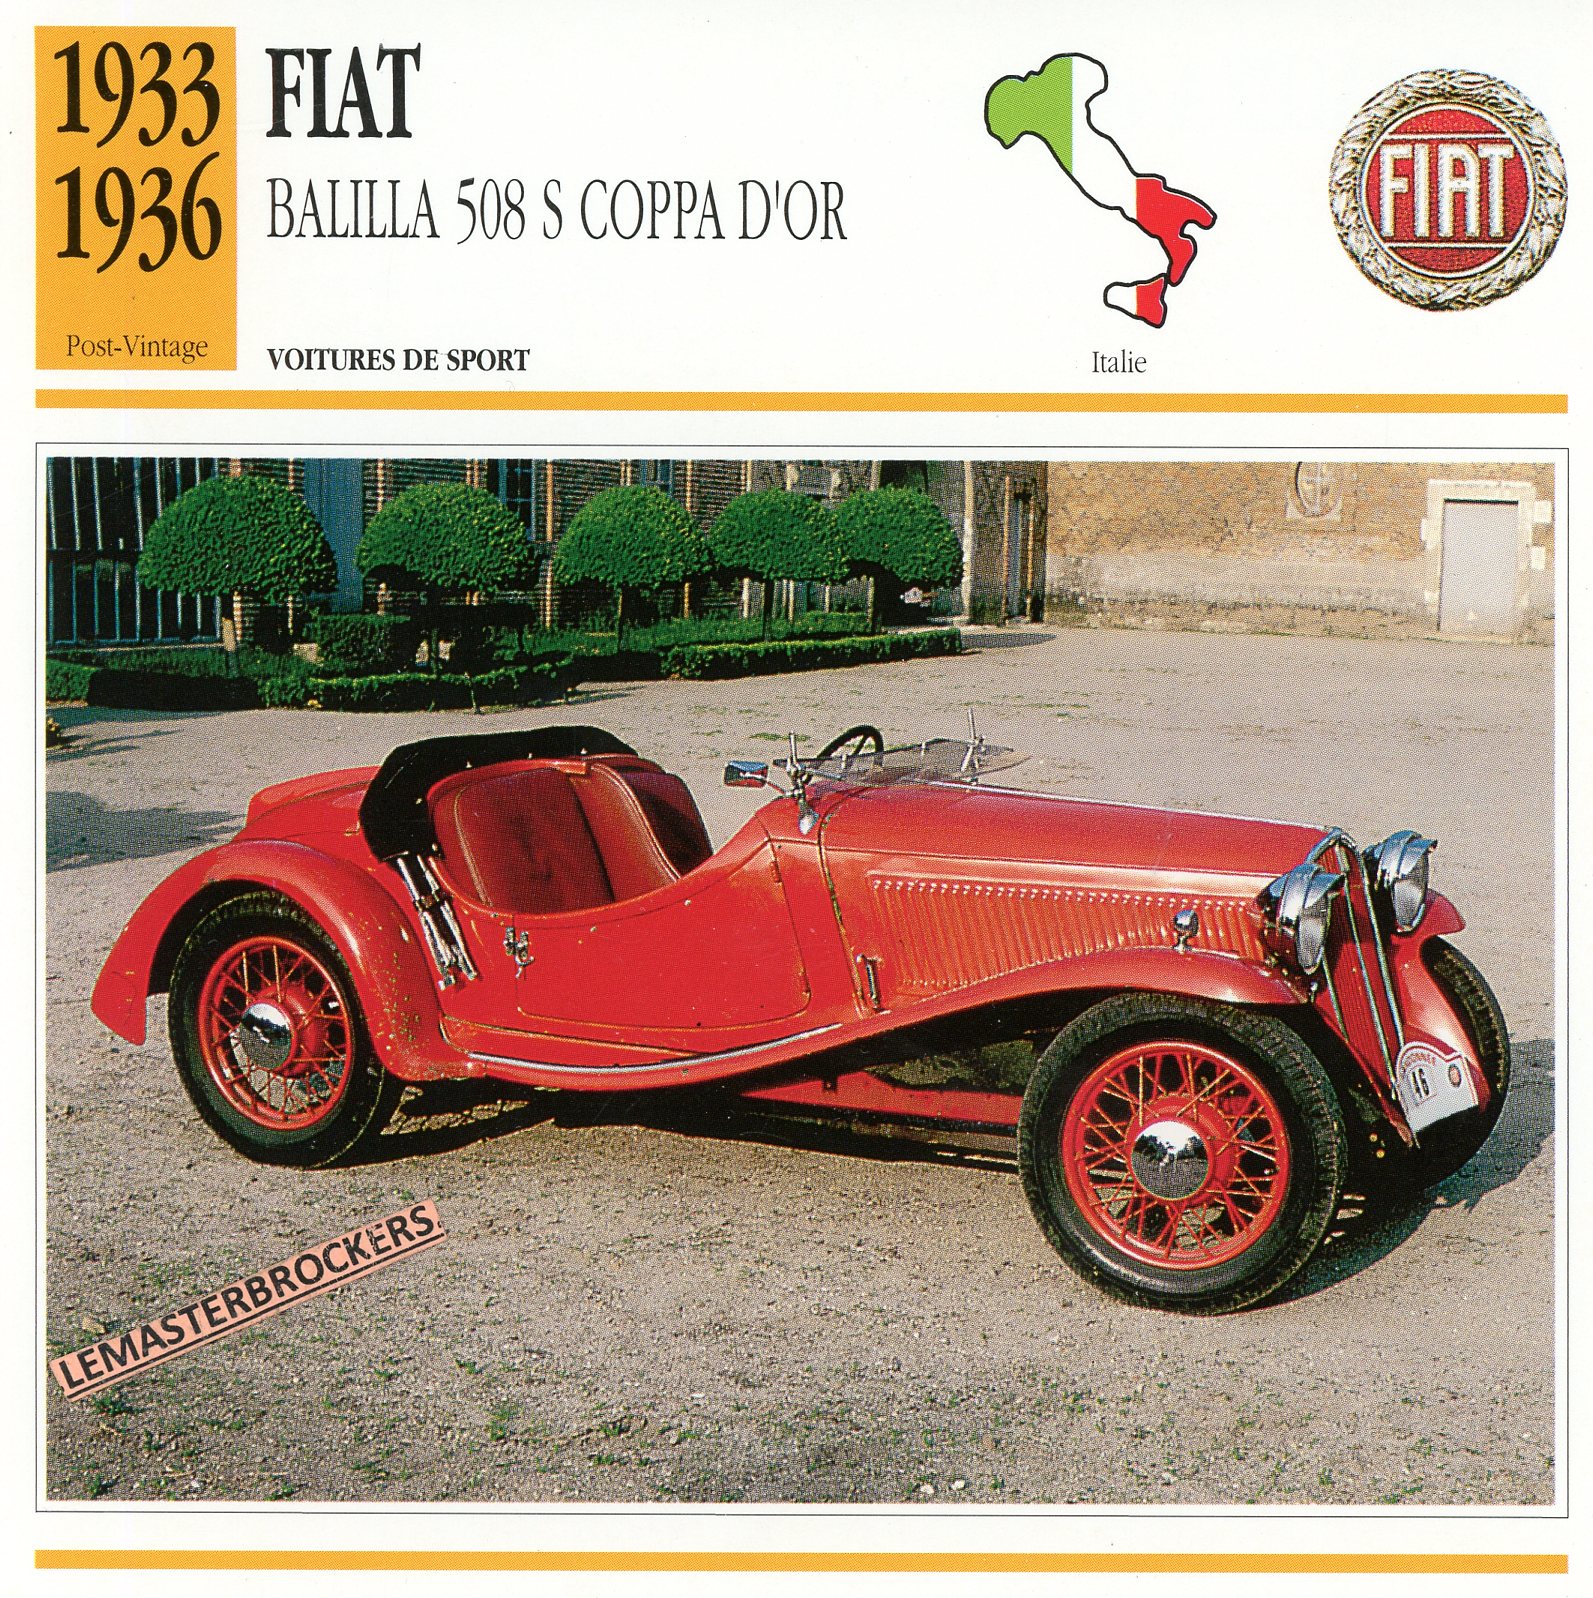 FIAT-BALILLA-508S-COPRA-FICHE-AUTO-CARD-CARS-LEMASTERBROCKERS